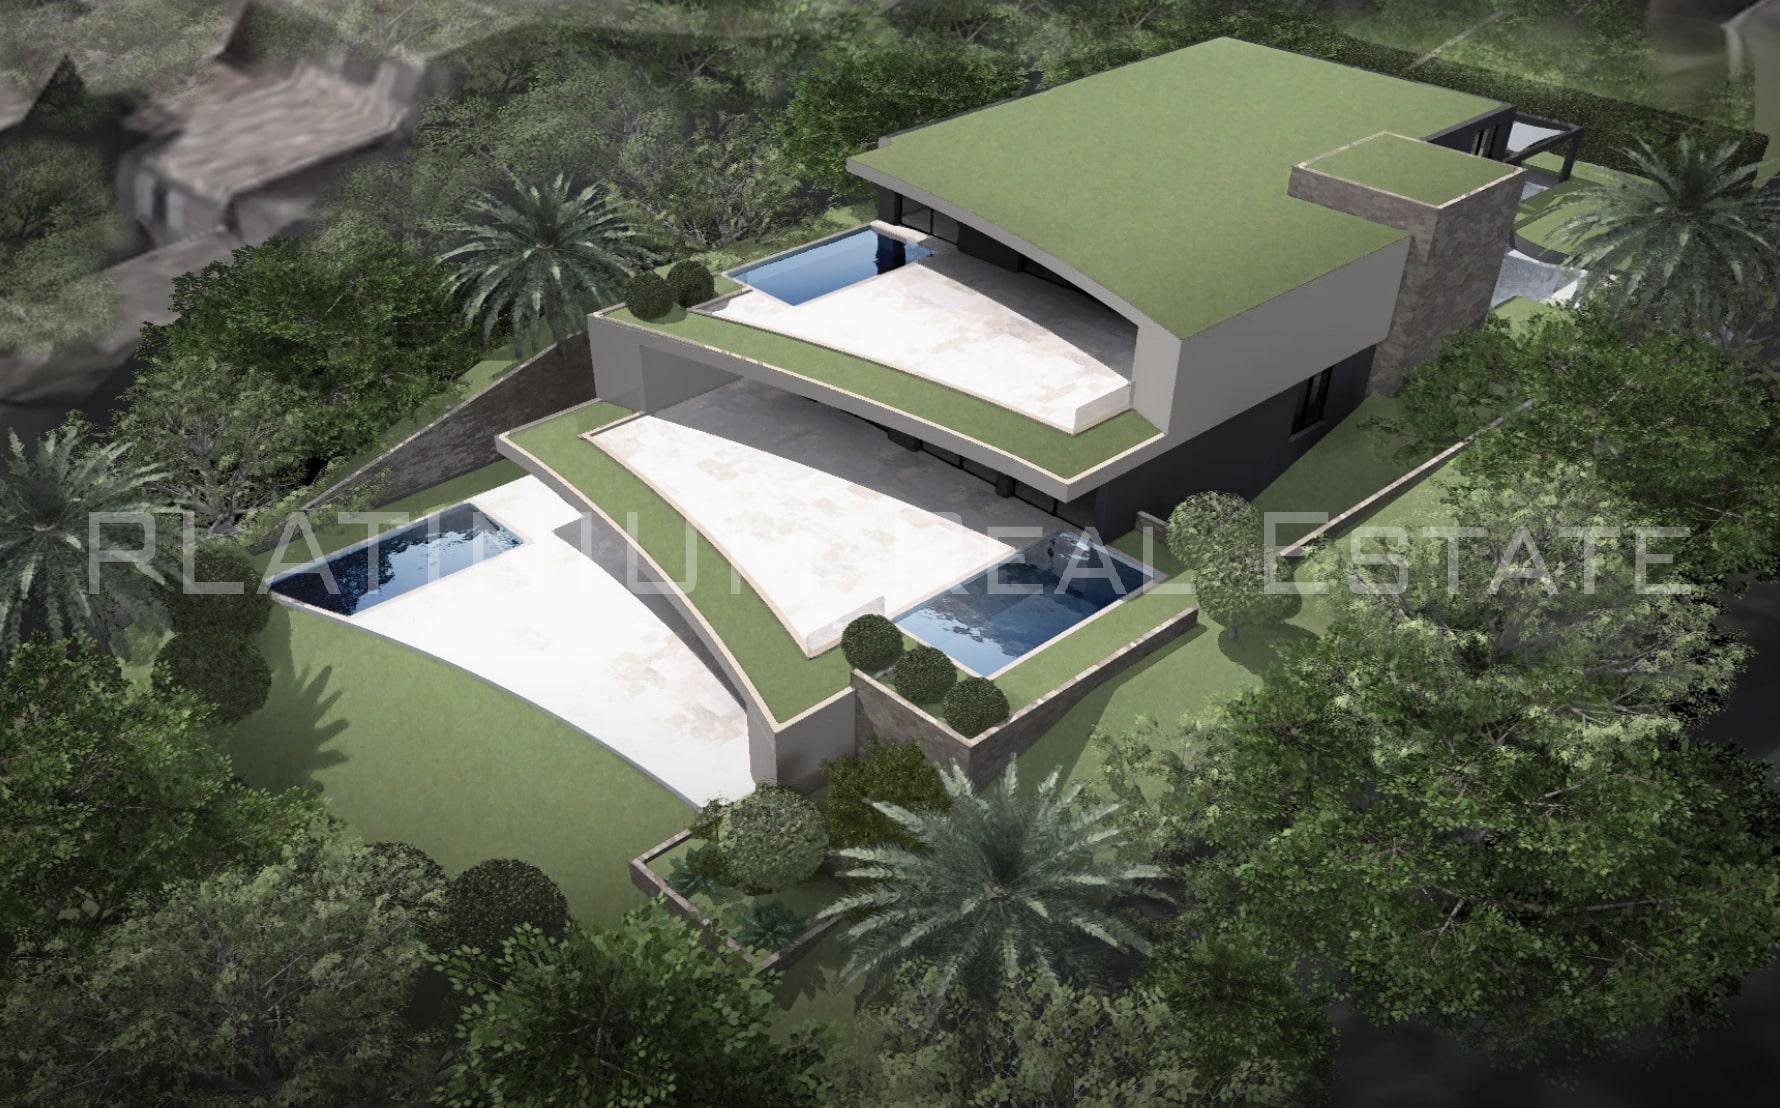 SAINT RAPHAEL - 4 / 5P 200m² + 115m² Terrace | Private Pool | GARAGE